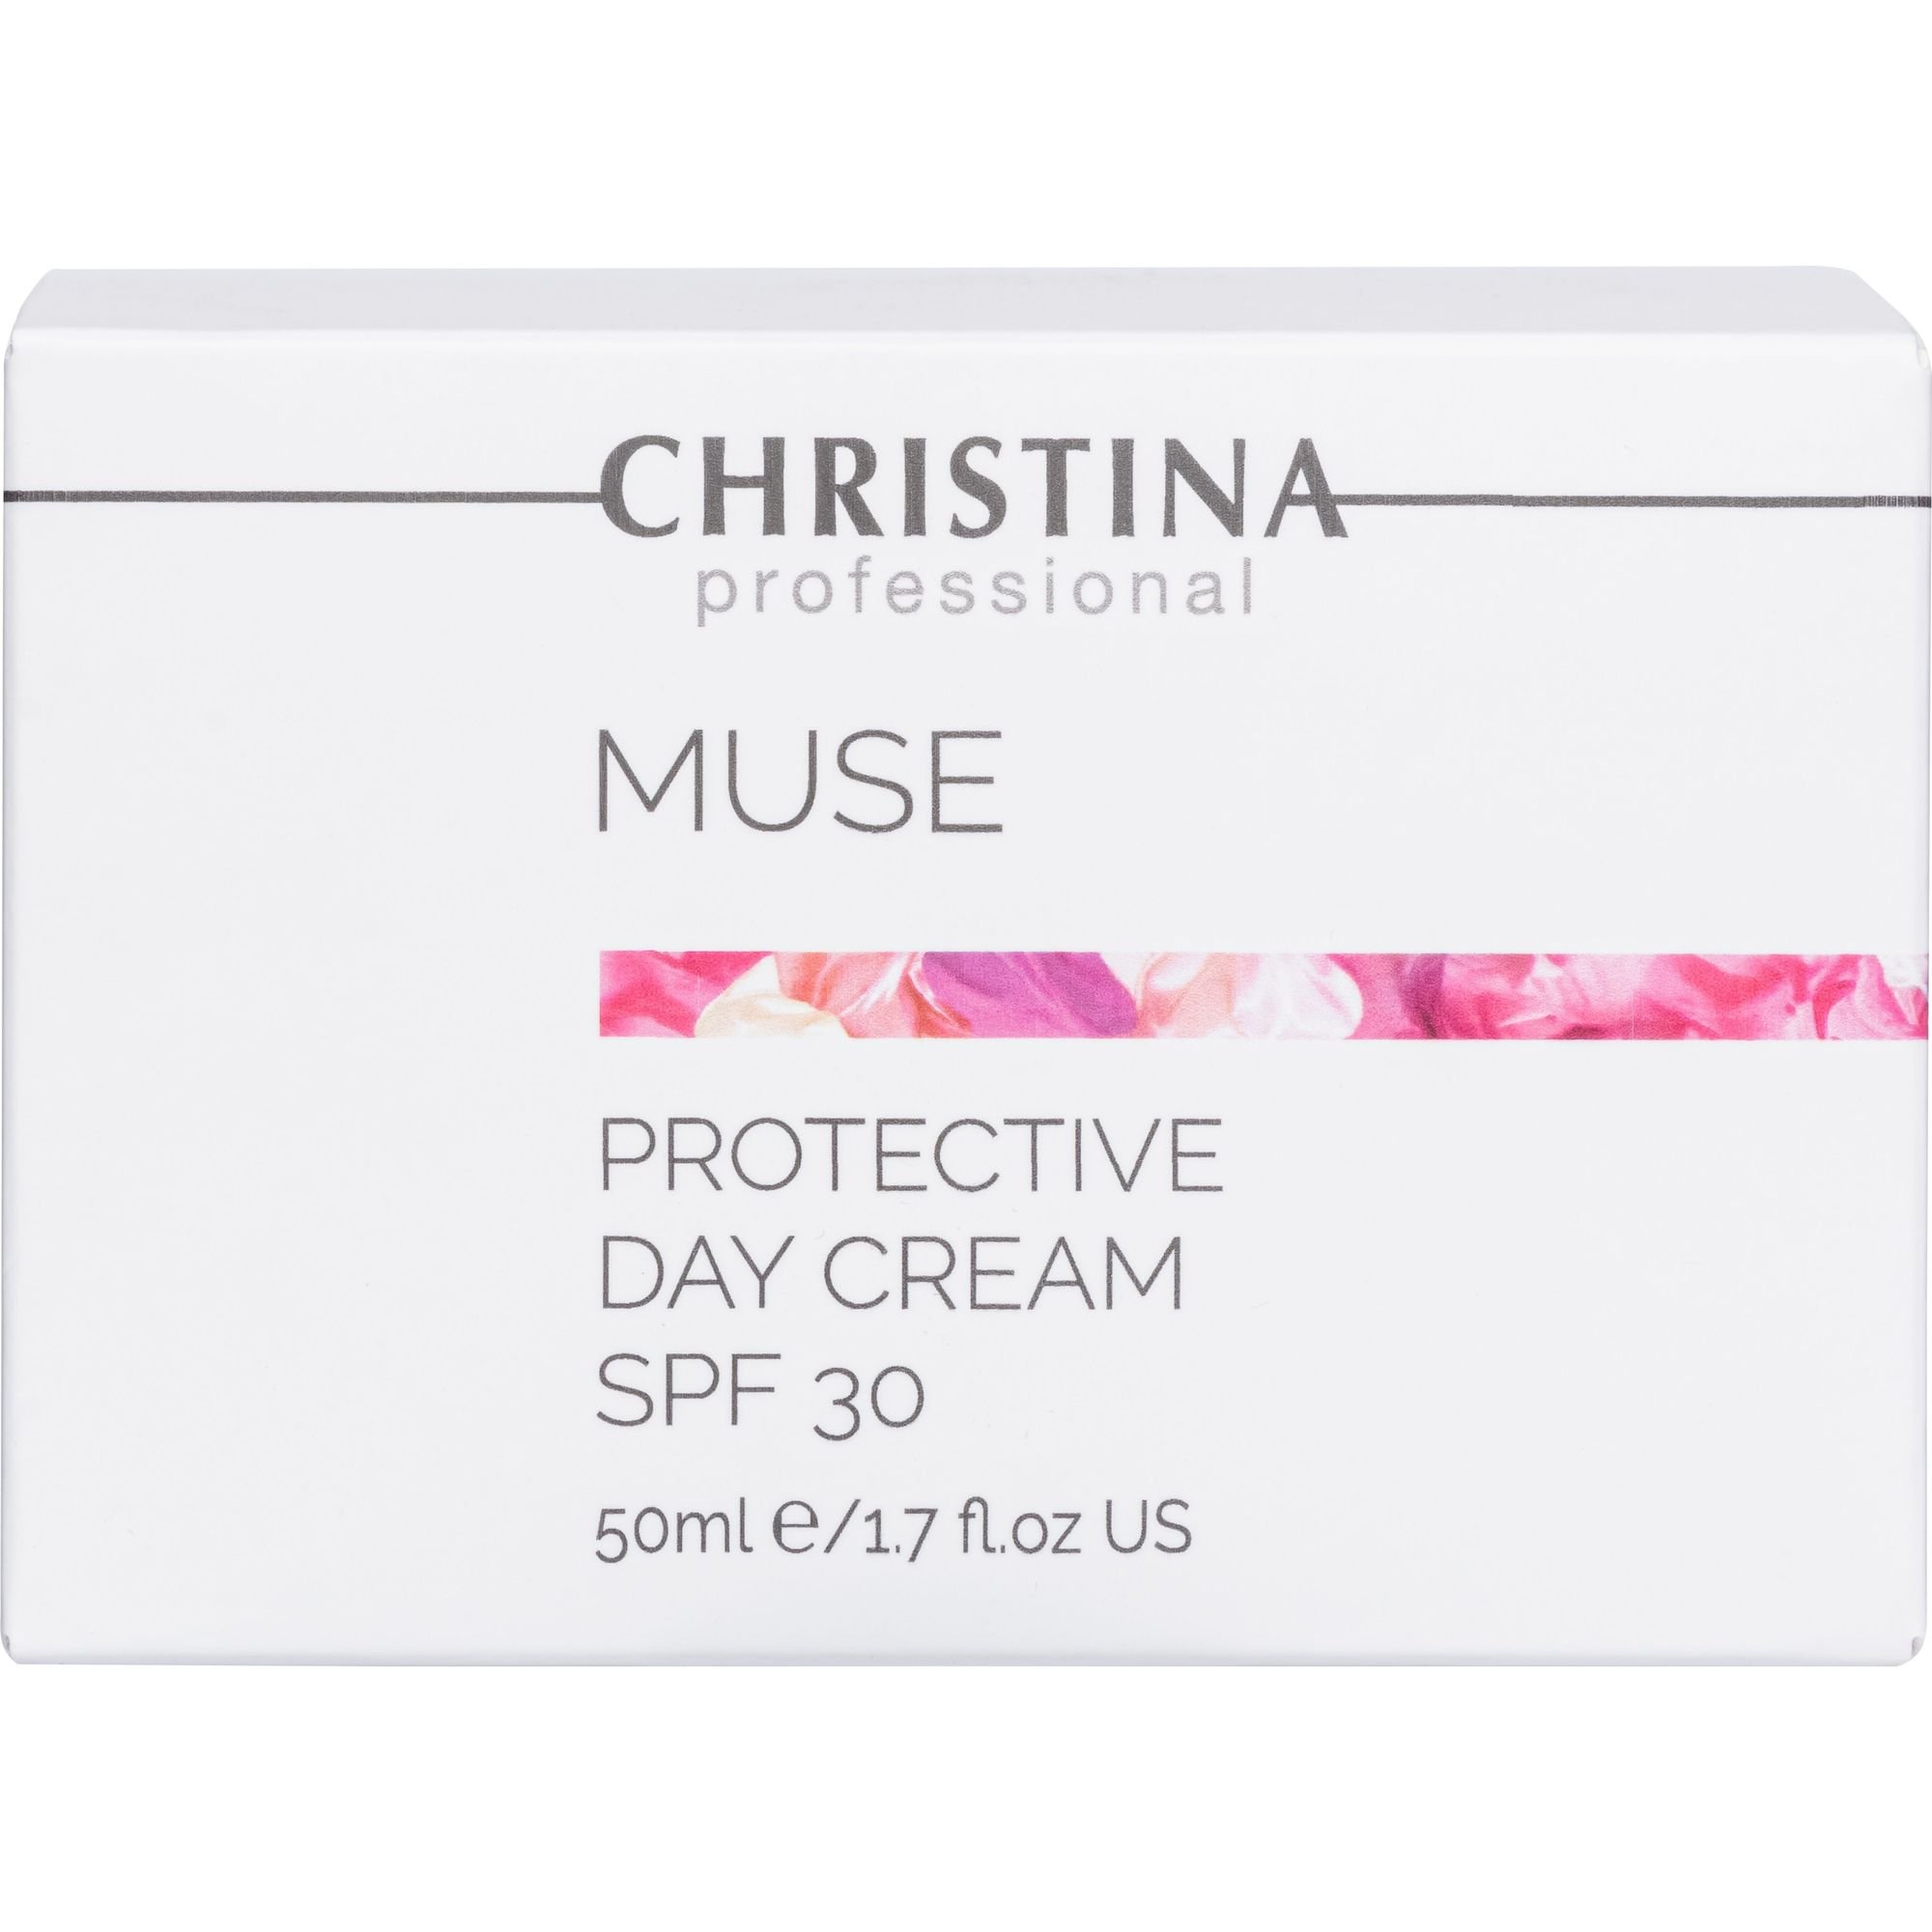 Защитный дневной крем Christina Muse Protective Day Cream SPF 30 50 мл - фото 3